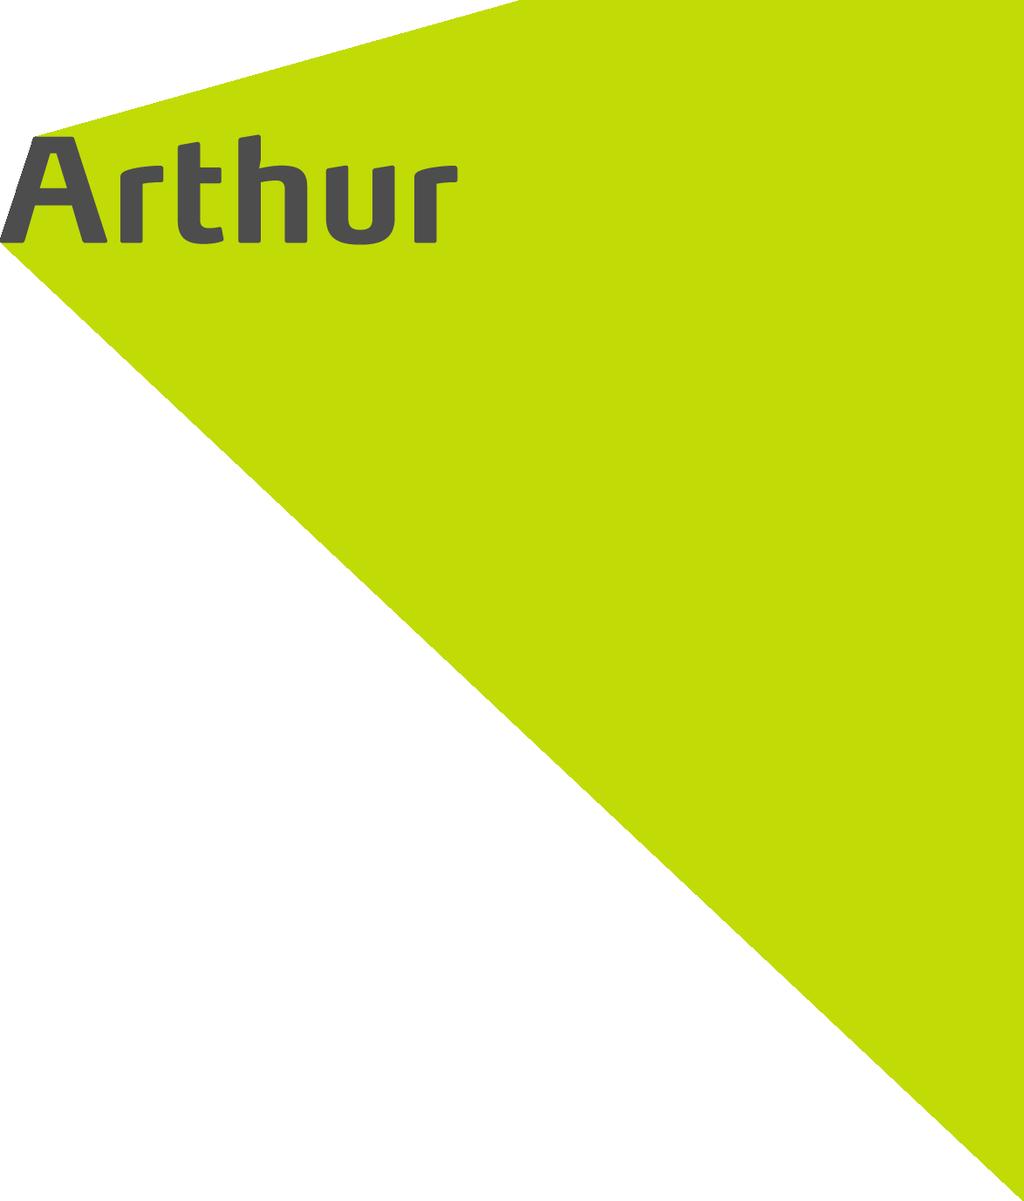 der Arthur GmbH Kommunikation & Design Buschstraße 52 53113 Bonn Fon 0178 168 22 55 Mail arthur@der-arthur.de Allgemeine Geschäftsbedingungen AGB Die Firma der Arthur GmbH, Buschstr.